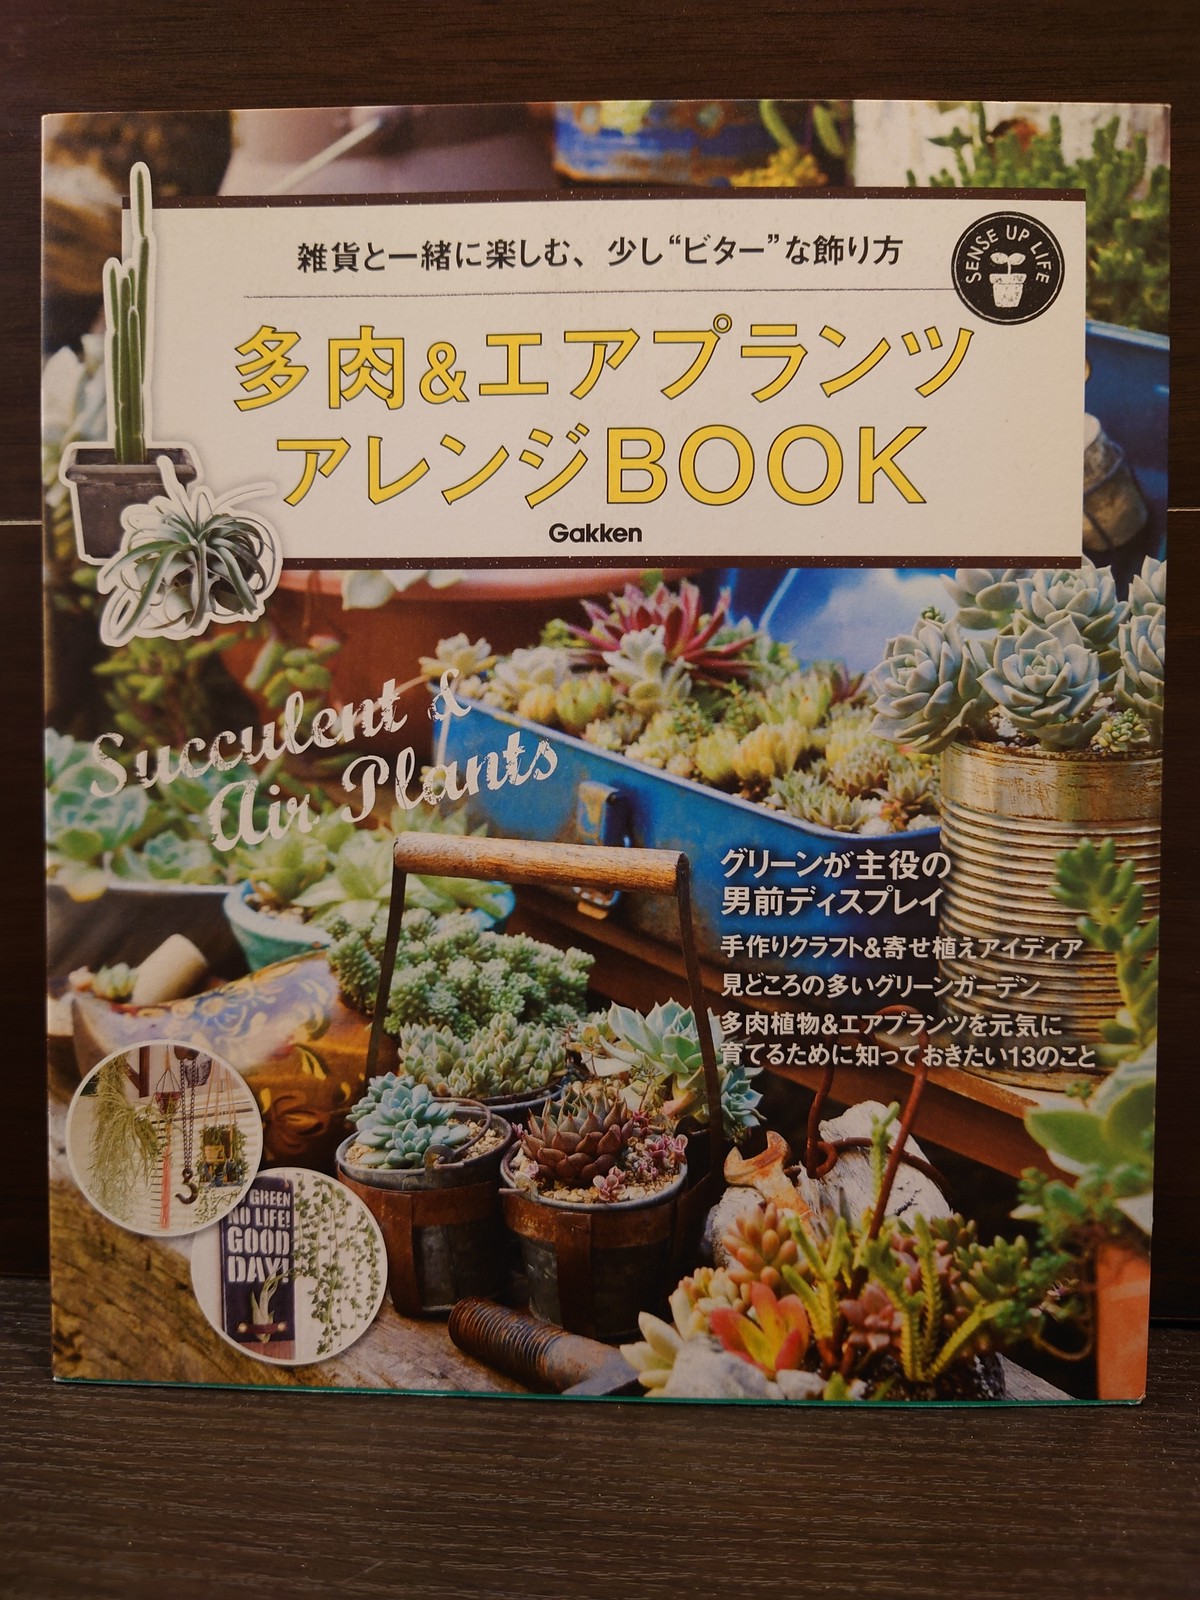 多肉 エアプランツ アレンジbook 弥生坂 緑の本棚